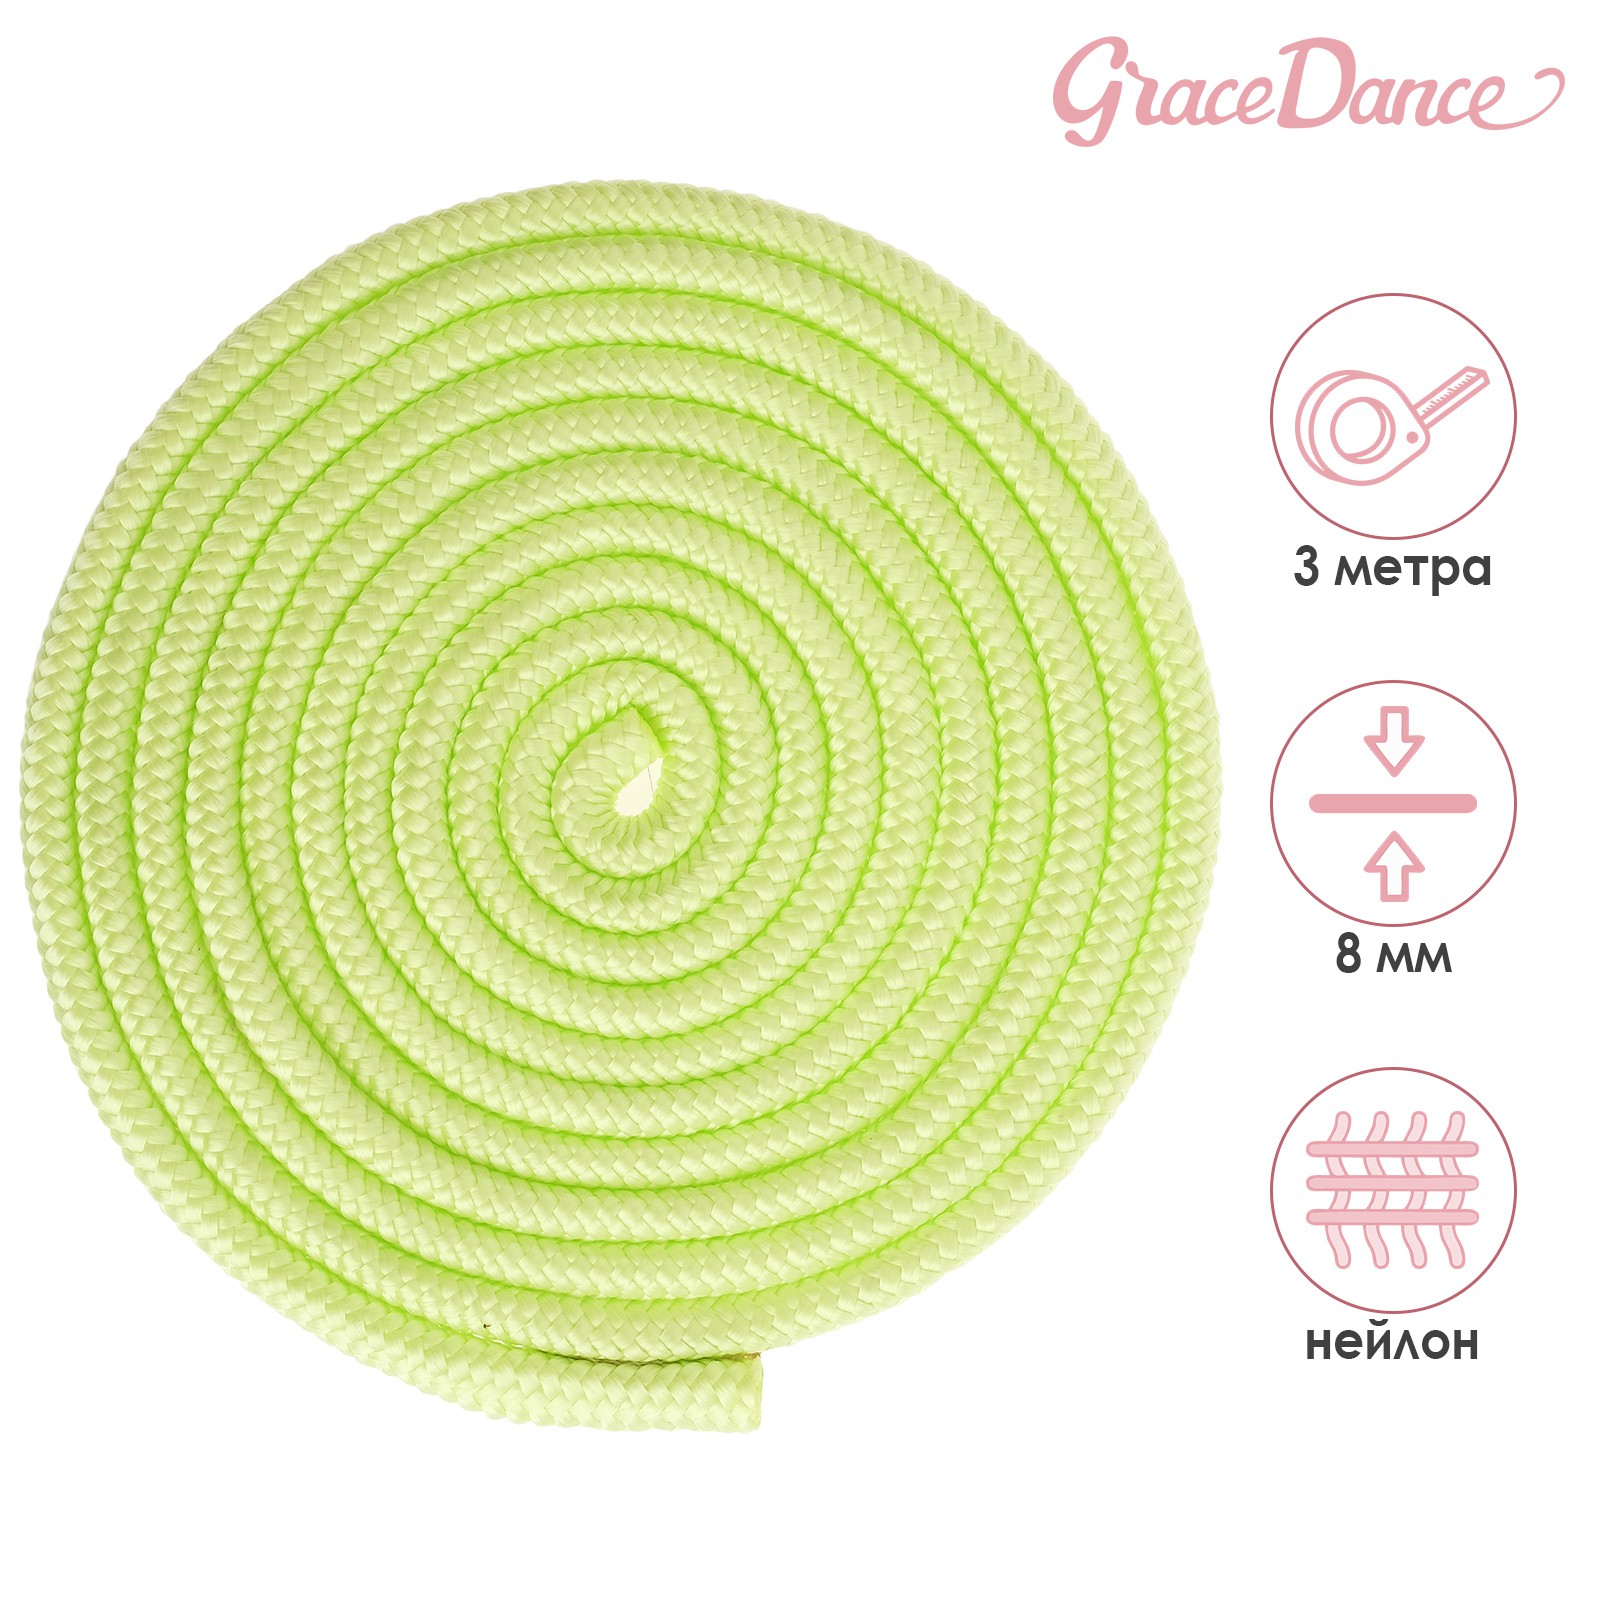 Скакалка Grace Dance для гимнастики 3 м. цвет салатовый - фото 1